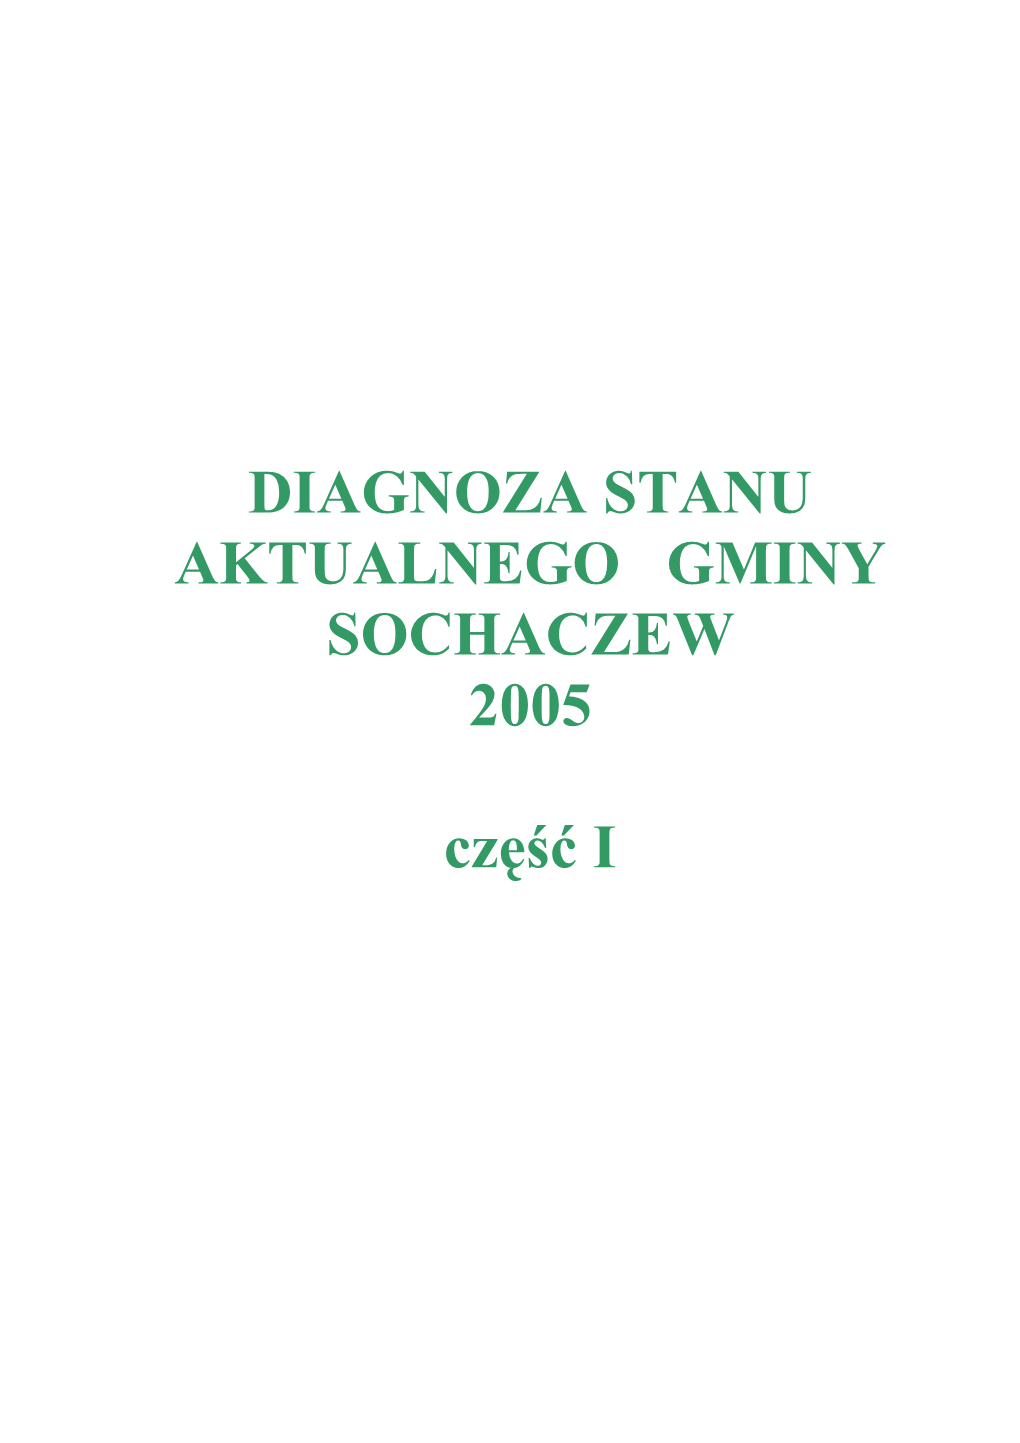 DIAGNOZA STANU AKTUALNEGO GMINY SOCHACZEW 2005 Część I